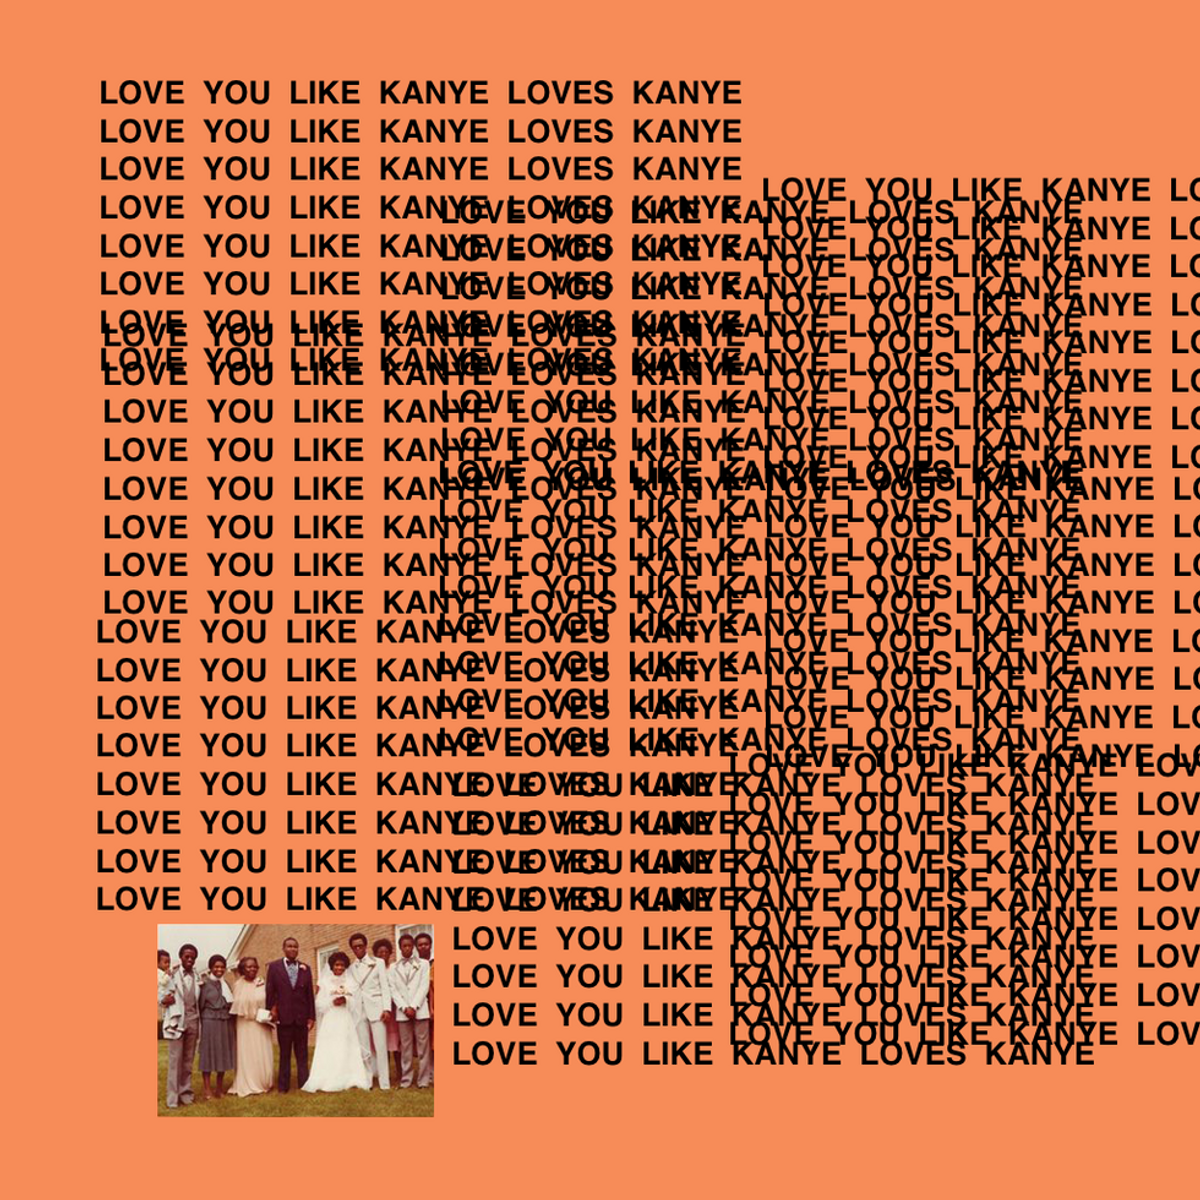 7 Reasons You Should Love Kanye Like Kanye Love Kanye